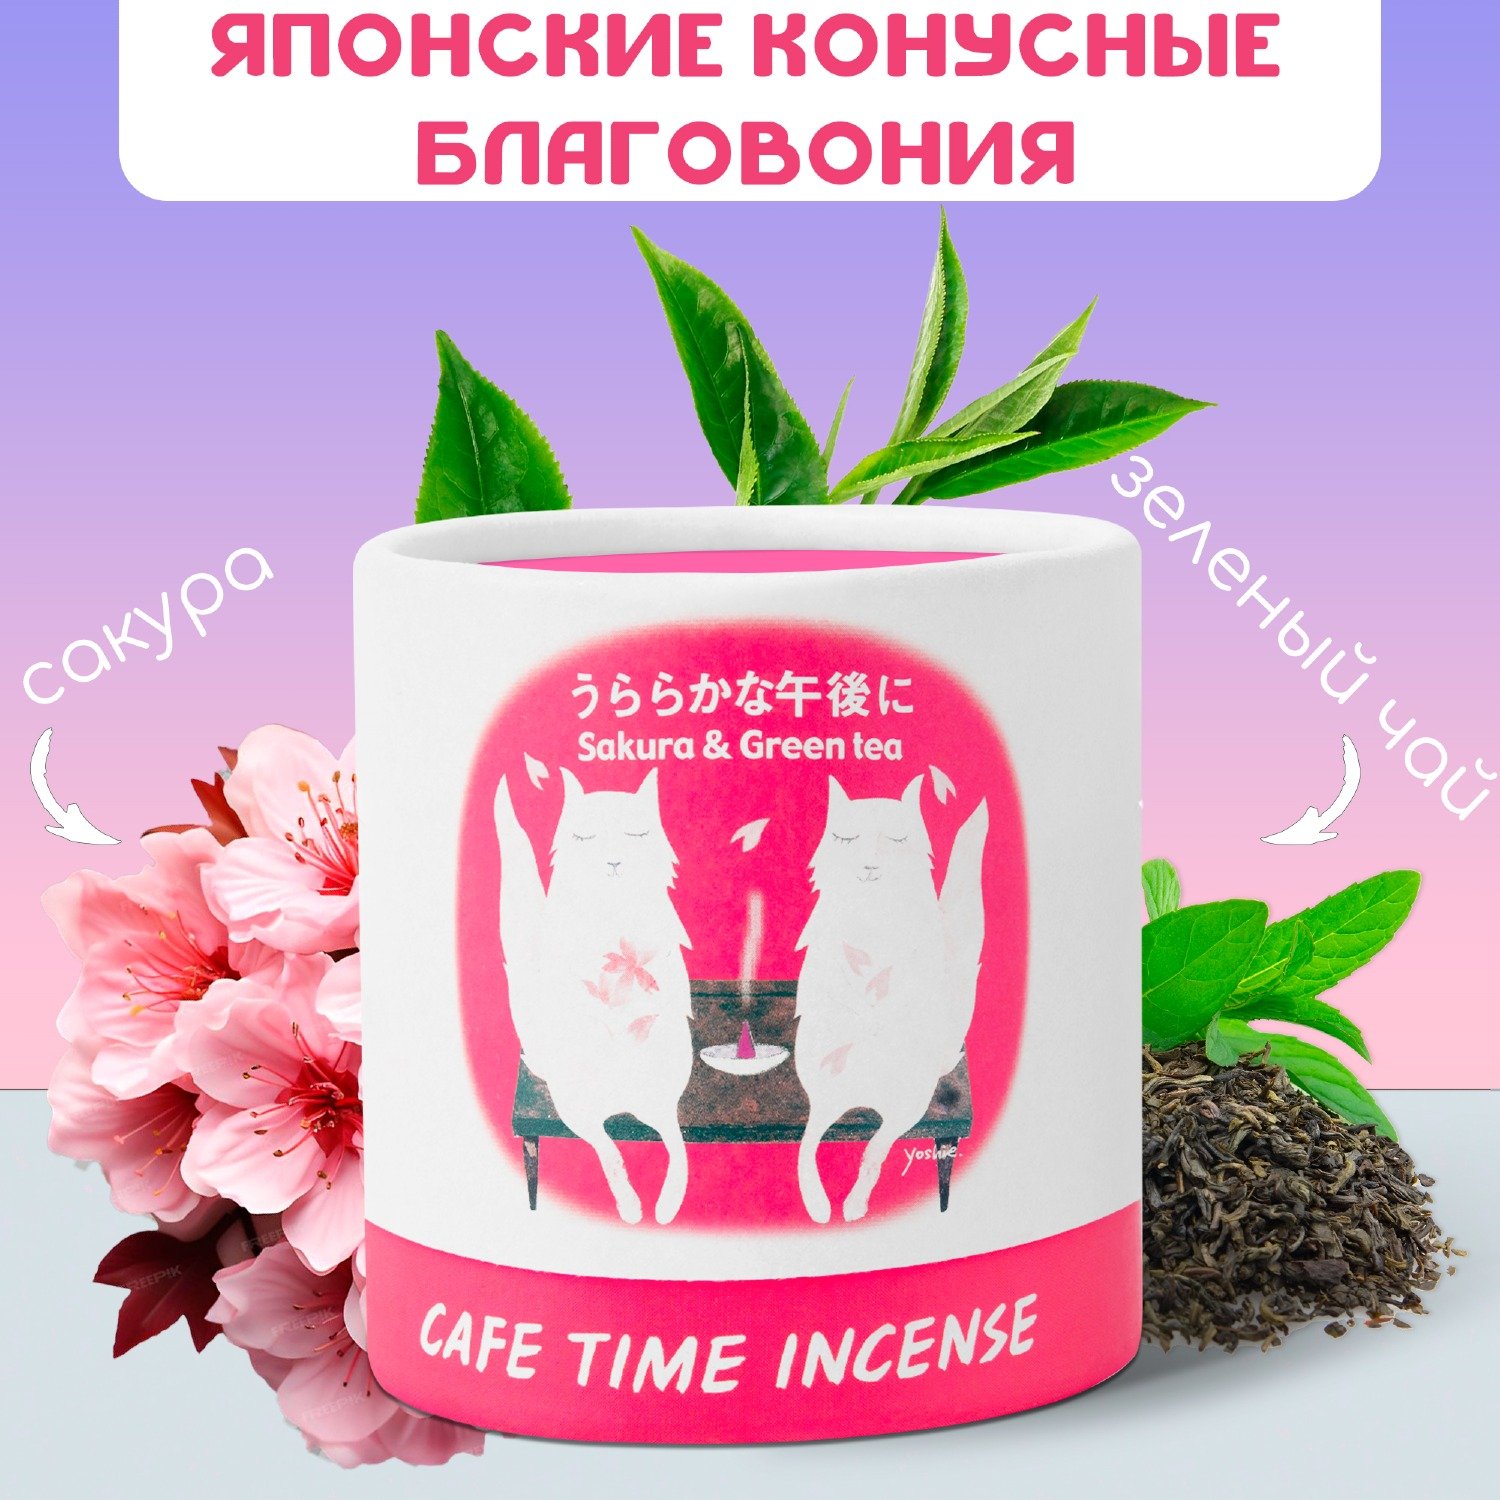 Купить Благовоние CAFE TIME INCENSE — BRIGHT AFTERNOON (Цветущая вишня и зелёный чай) 5+5 конусов в интернет-магазине Ариаварта